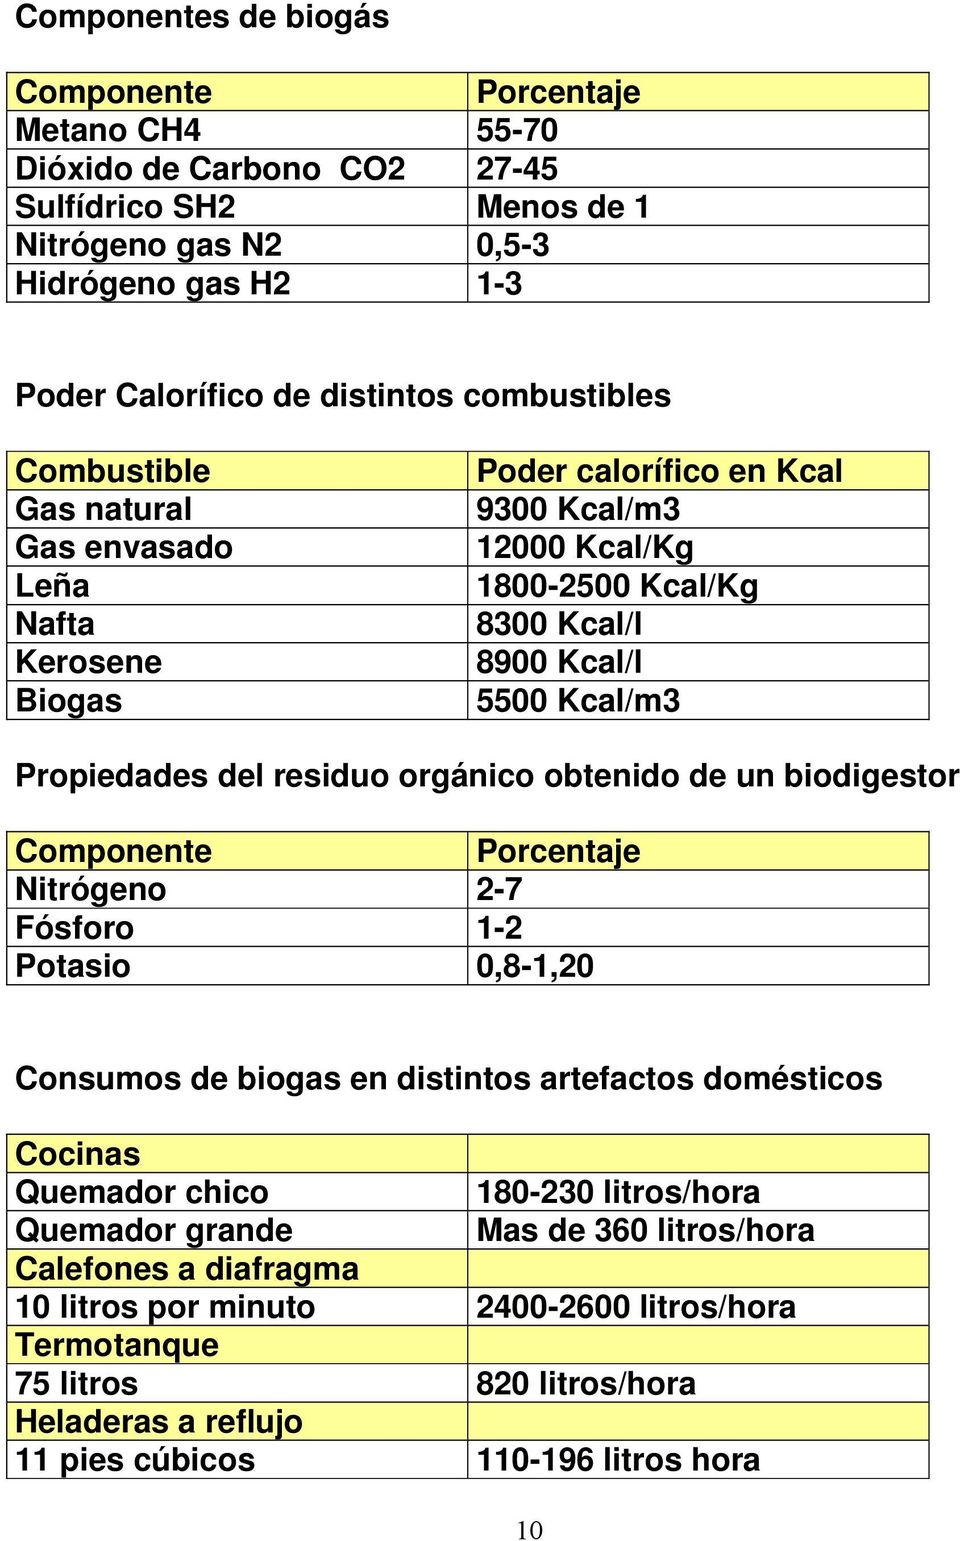 del residuo orgánico obtenido de un biodigestor Componente Porcentaje Nitrógeno 2-7 Fósforo 1-2 Potasio 0,8-1,20 Consumos de biogas en distintos artefactos domésticos Cocinas Quemador chico 180-230